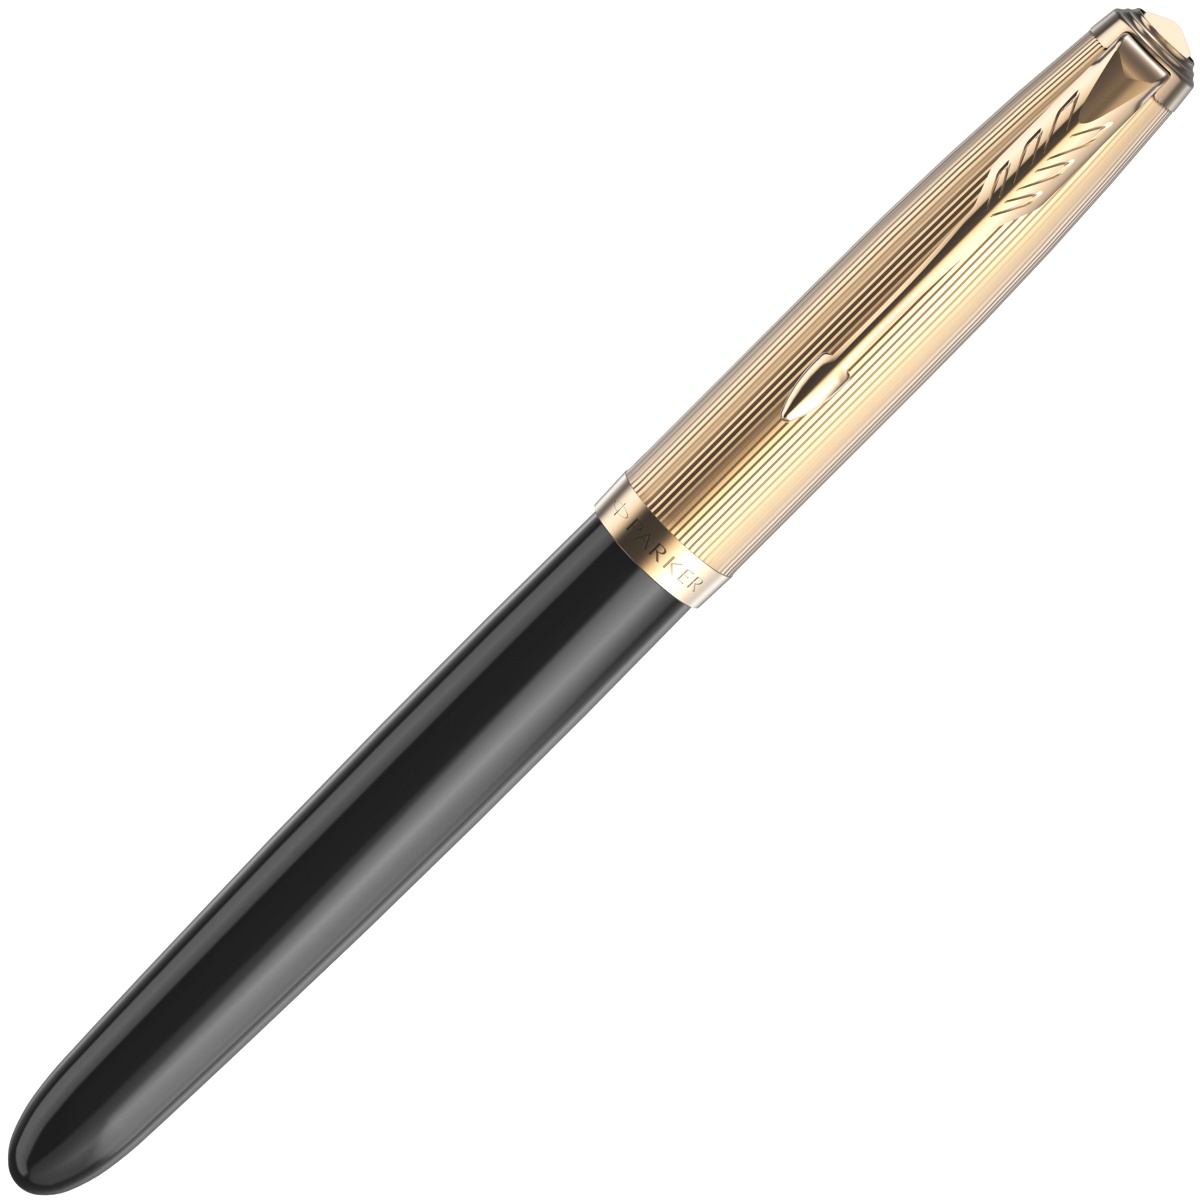  Ручка перьевая Parker 51 Premium, Black GT (Перо F), фото 2